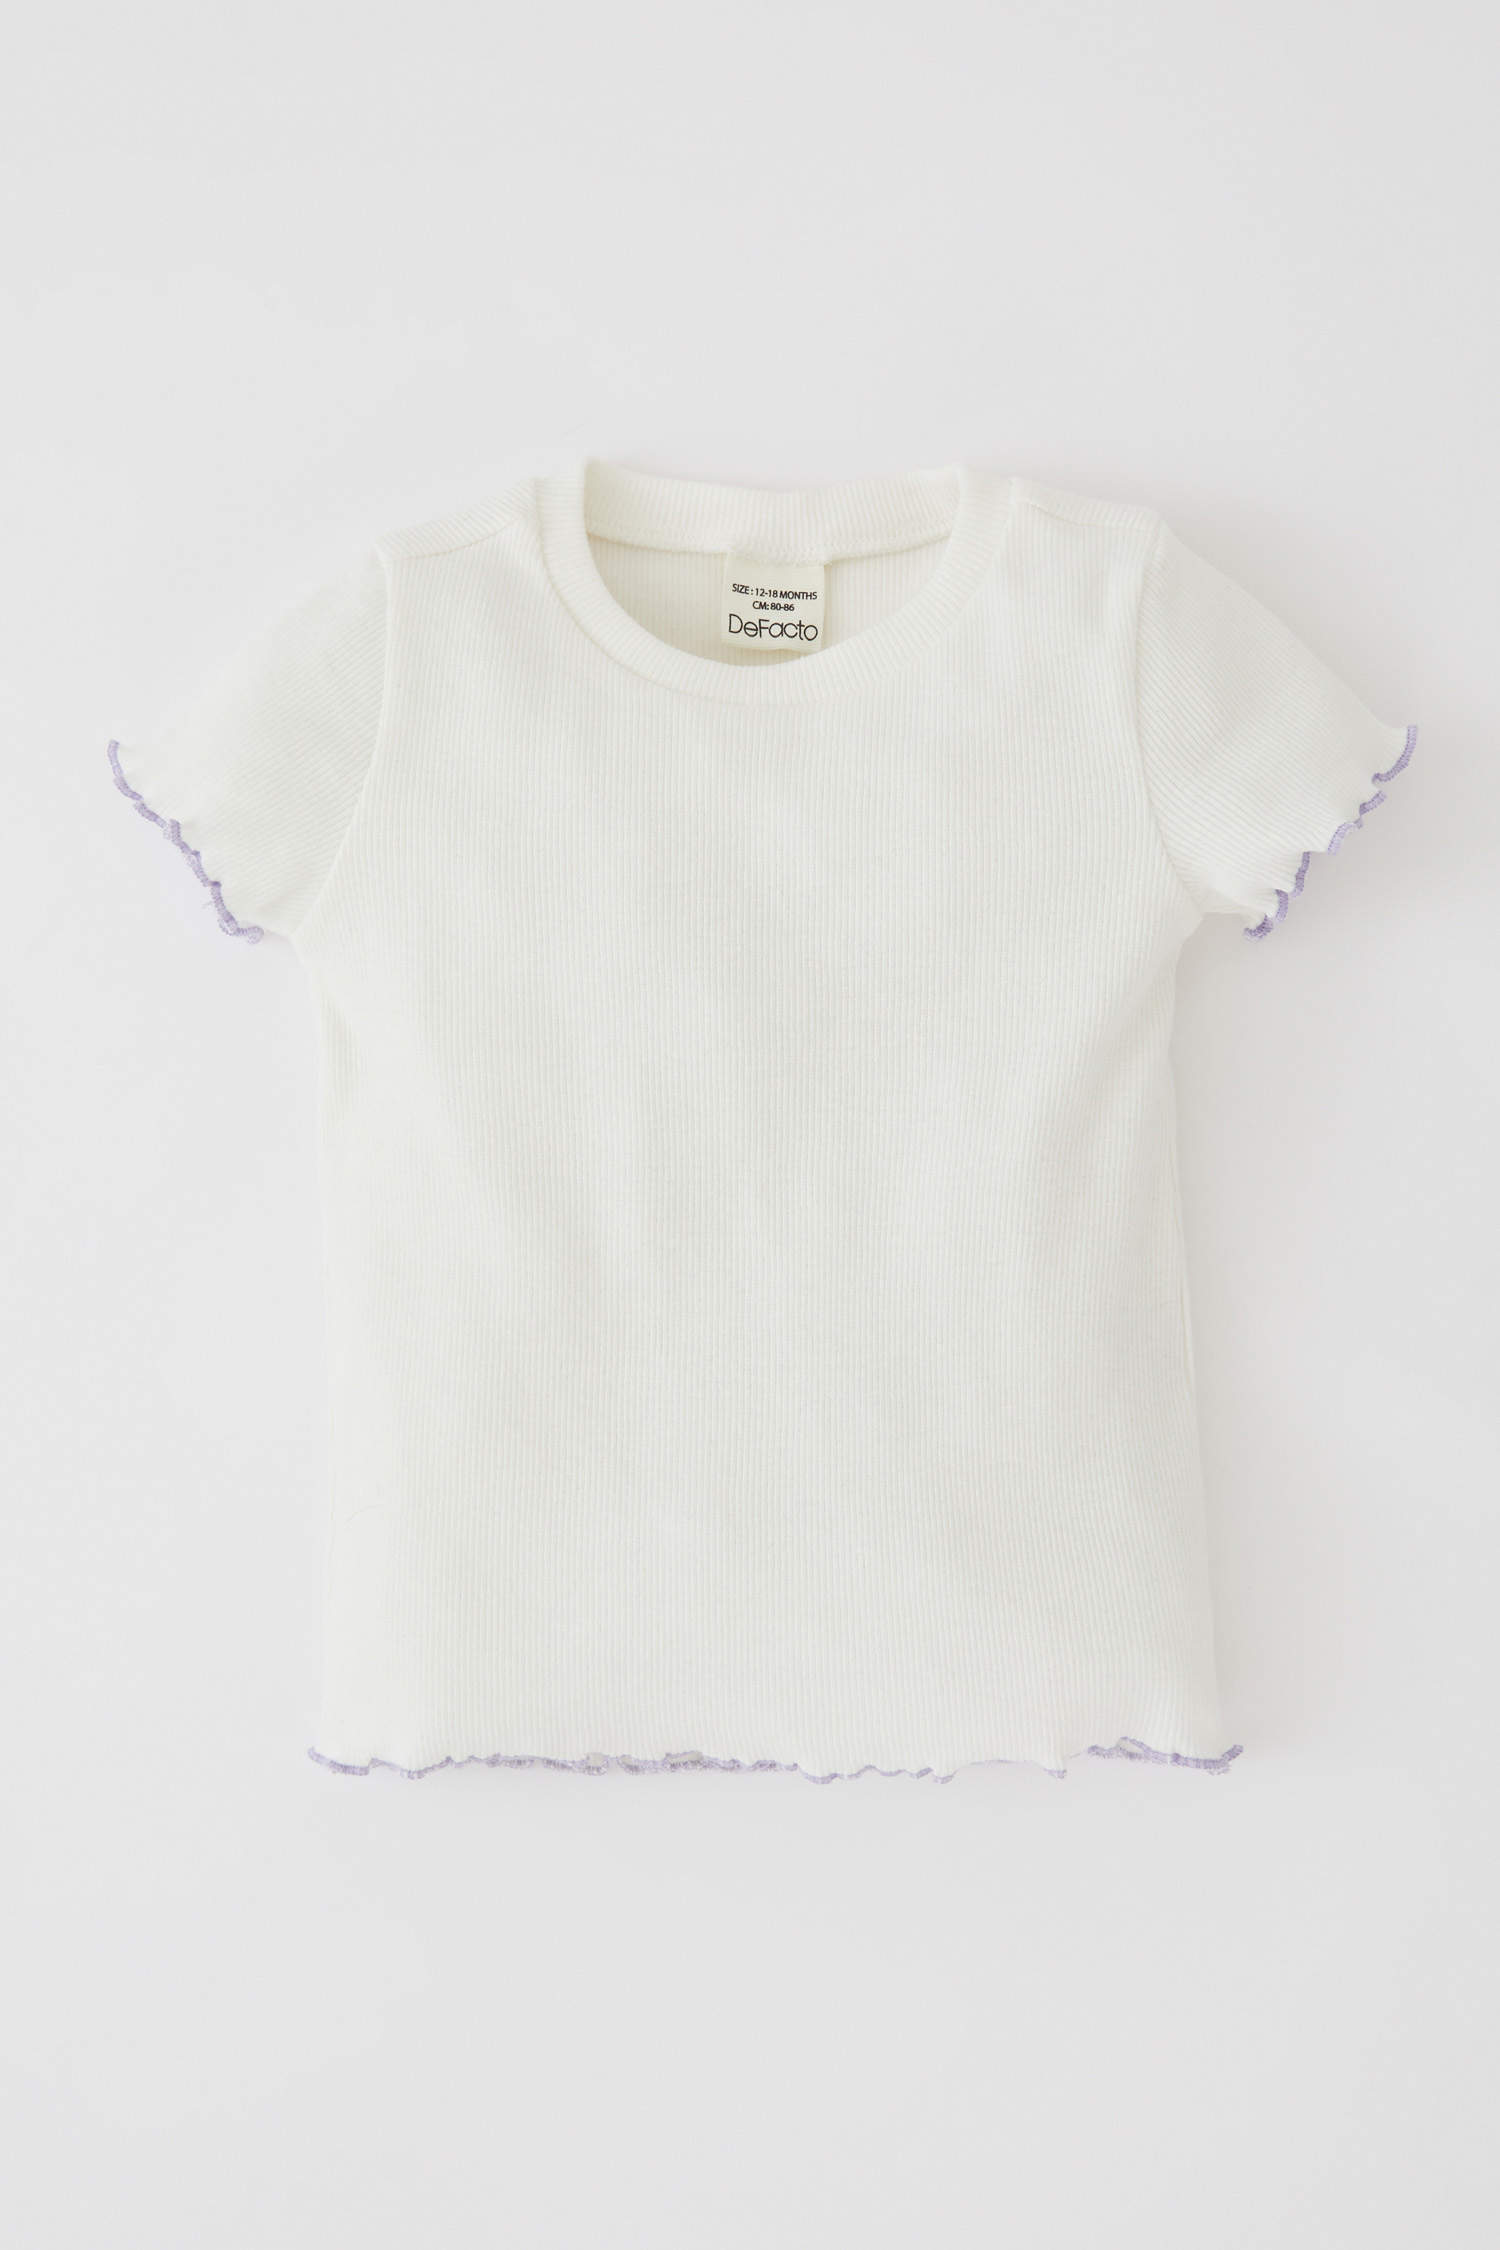 Defacto Kız Bebek Kısa Kollu Tişört Pötikare Desenli Askılı Elbise Takım. 2